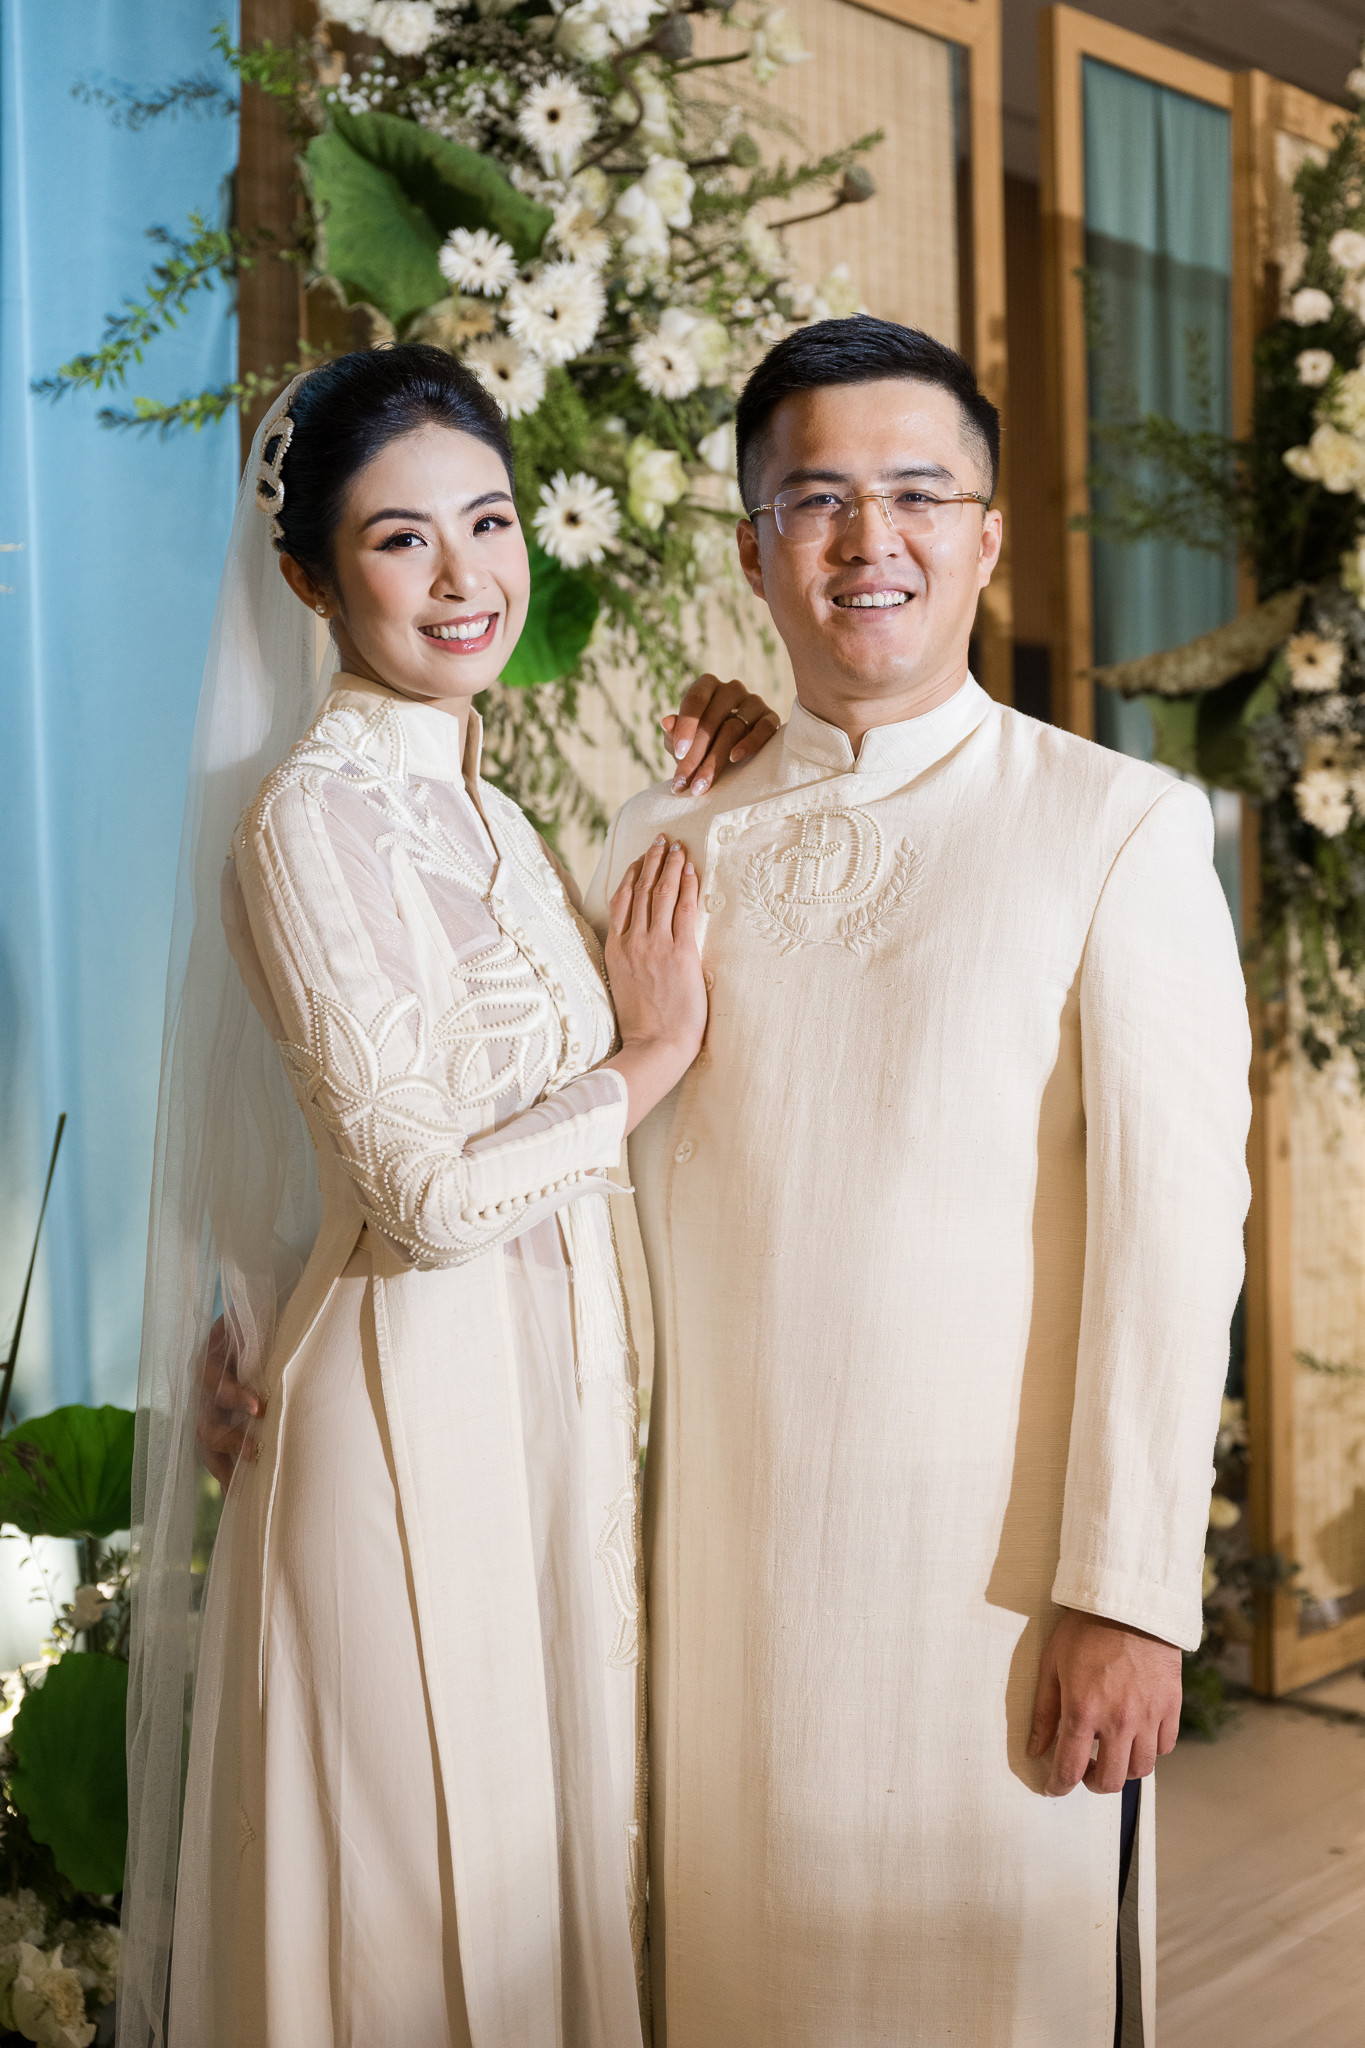 Tối 10/12, lễ cưới lấy cảm hứng từ làng quê Việt Nam của Hoa hậu Ngọc Hân và chồng Phú Đạt diễn ra tại Hà Nội.